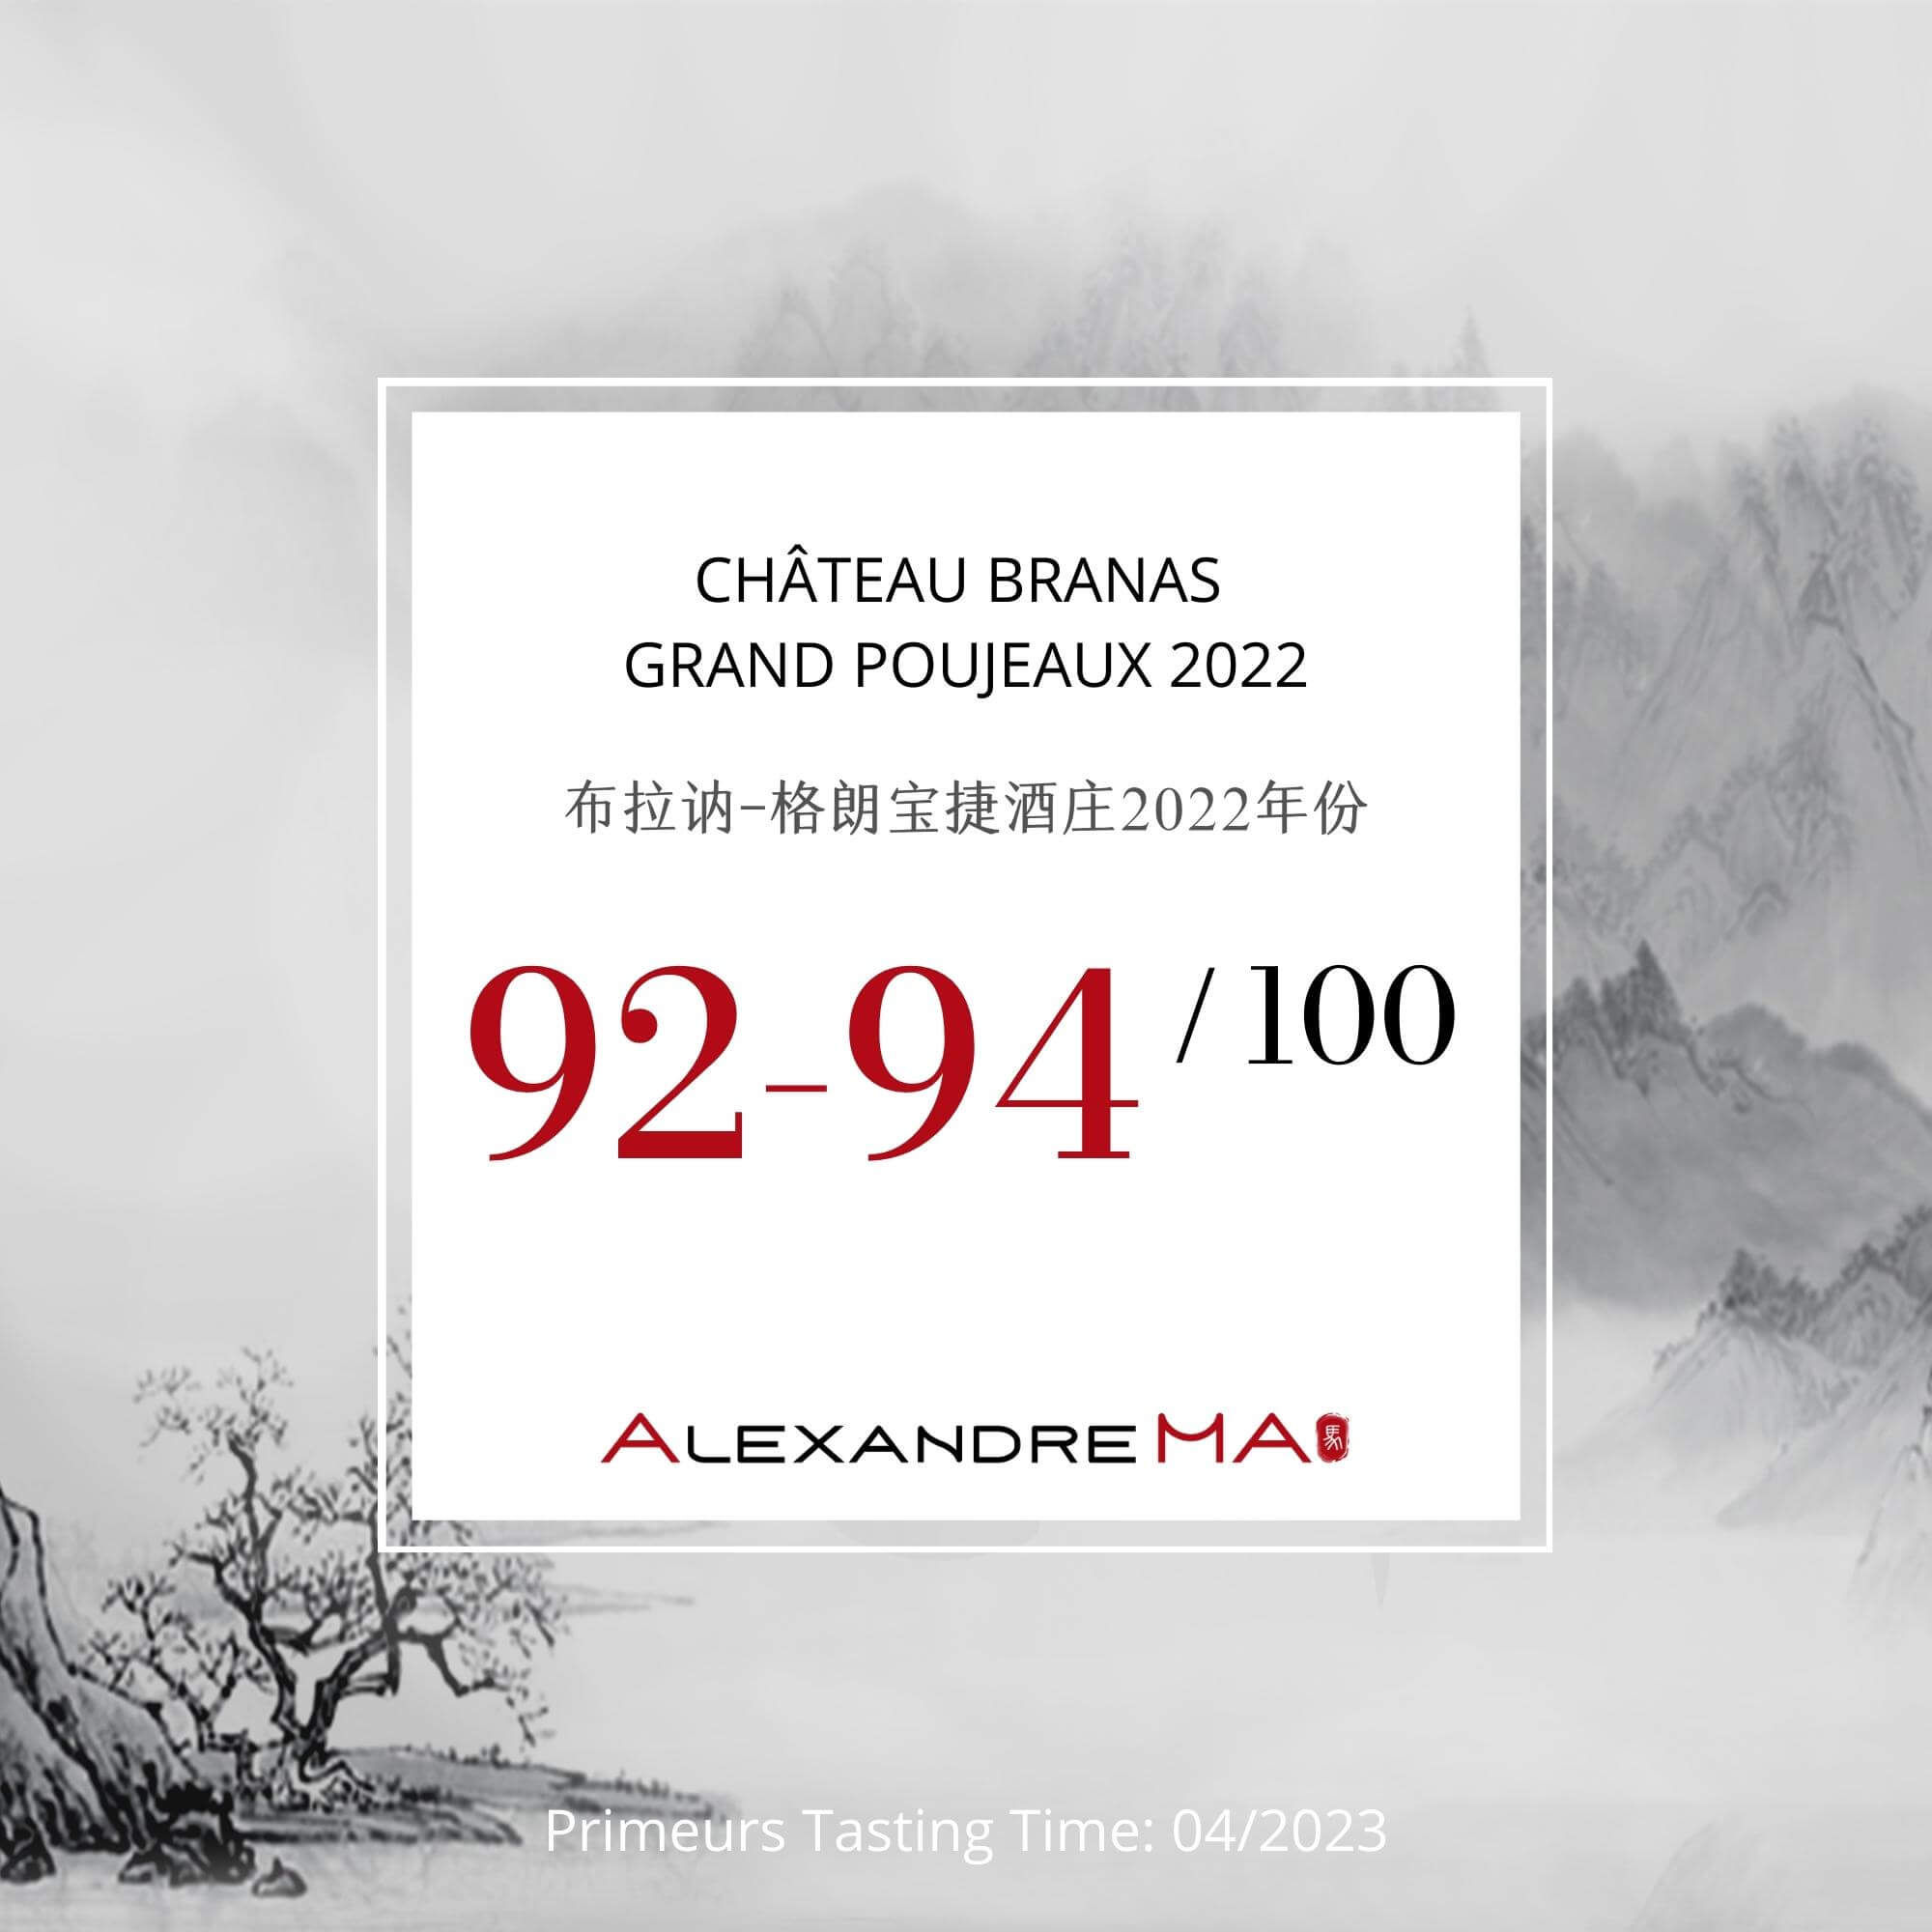 Château Branas Grand Poujeaux 2022 Primeurs - Alexandre MA